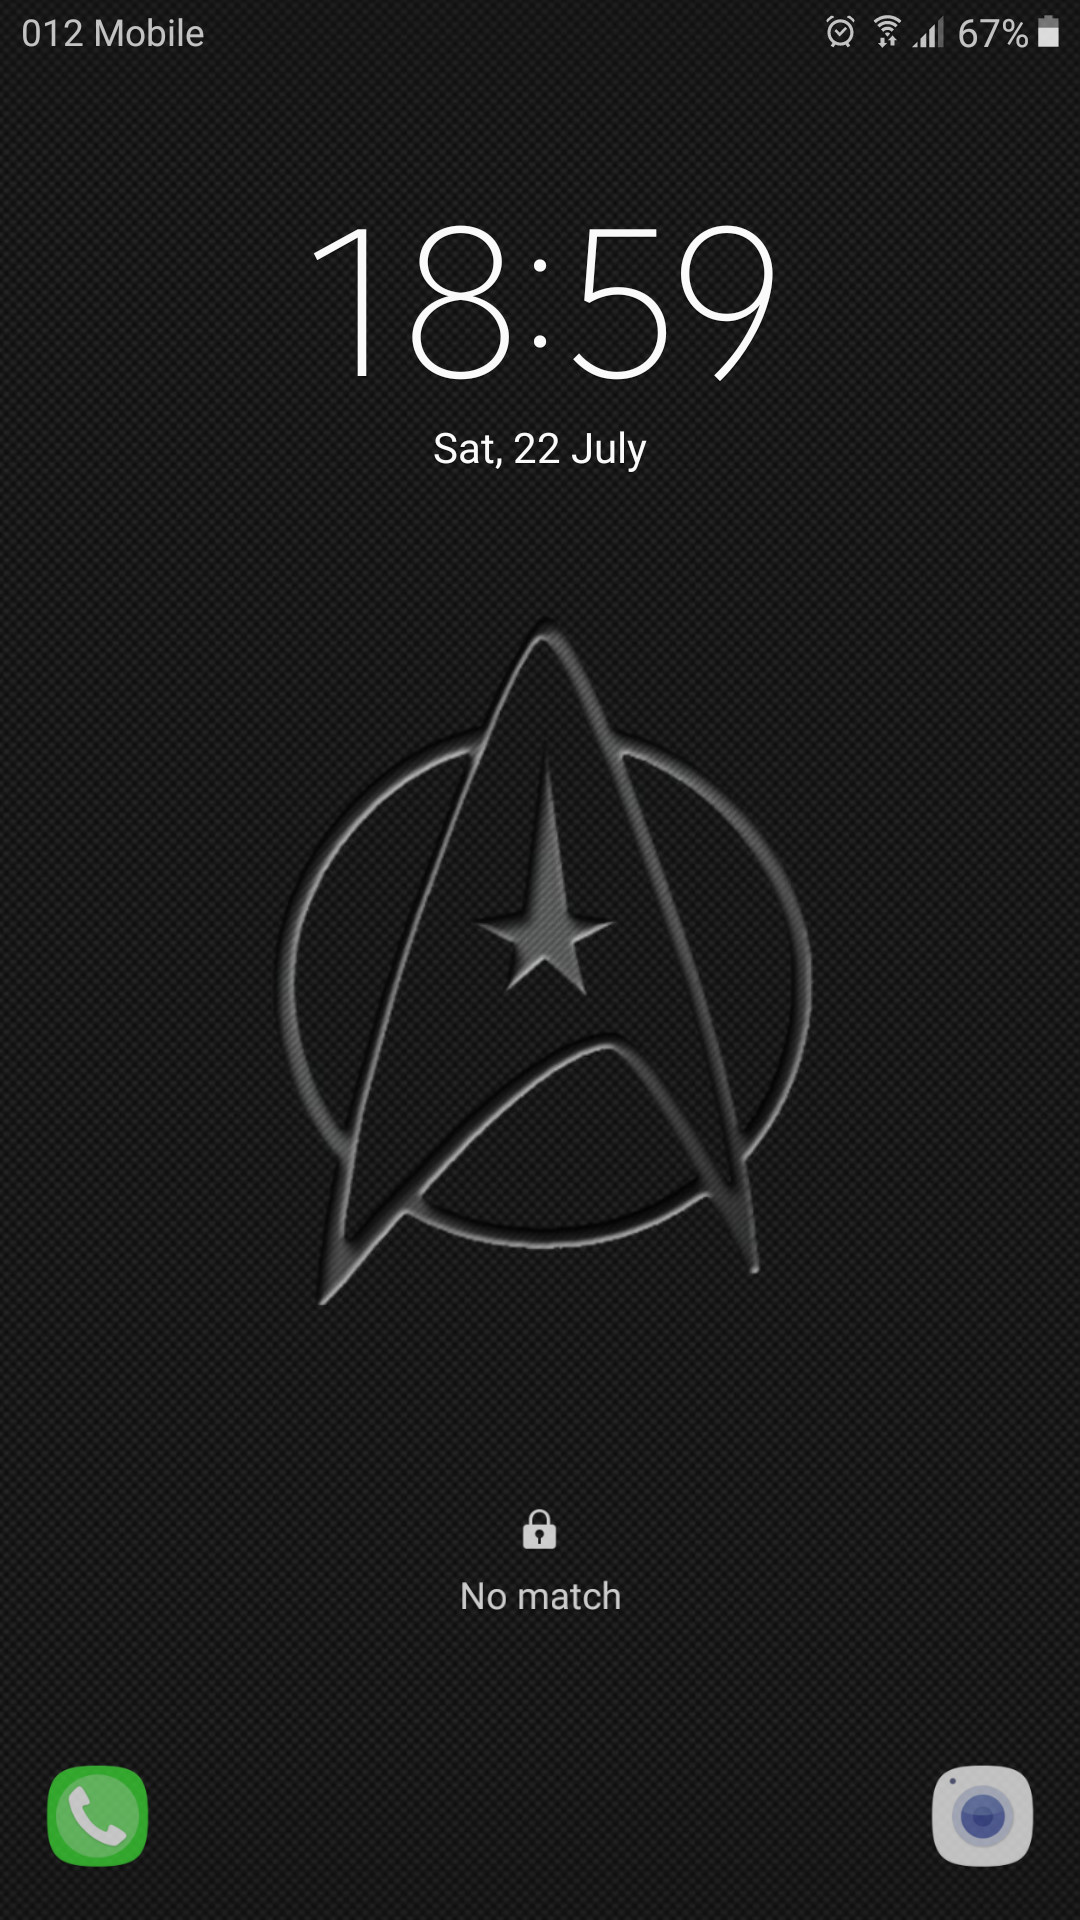 Star Trek Cell Phone Wallpaper Image